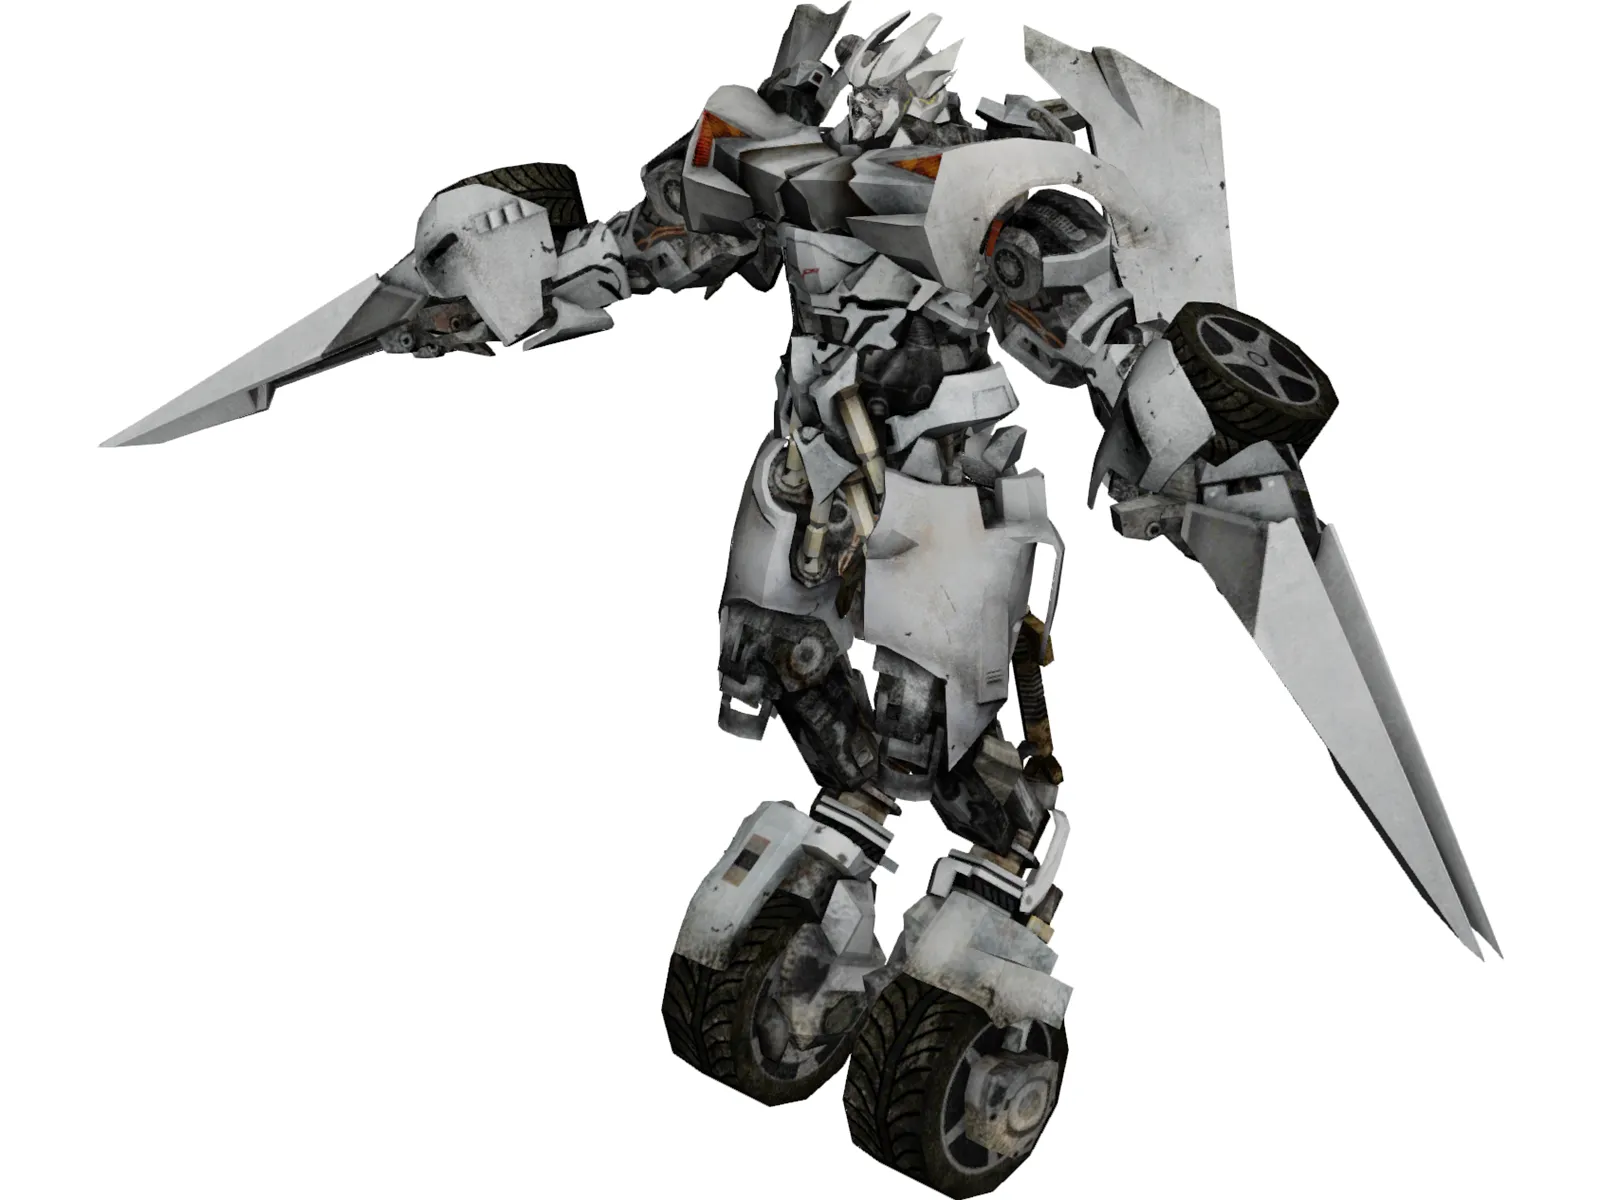 Transformers Sideswipe 3D Model